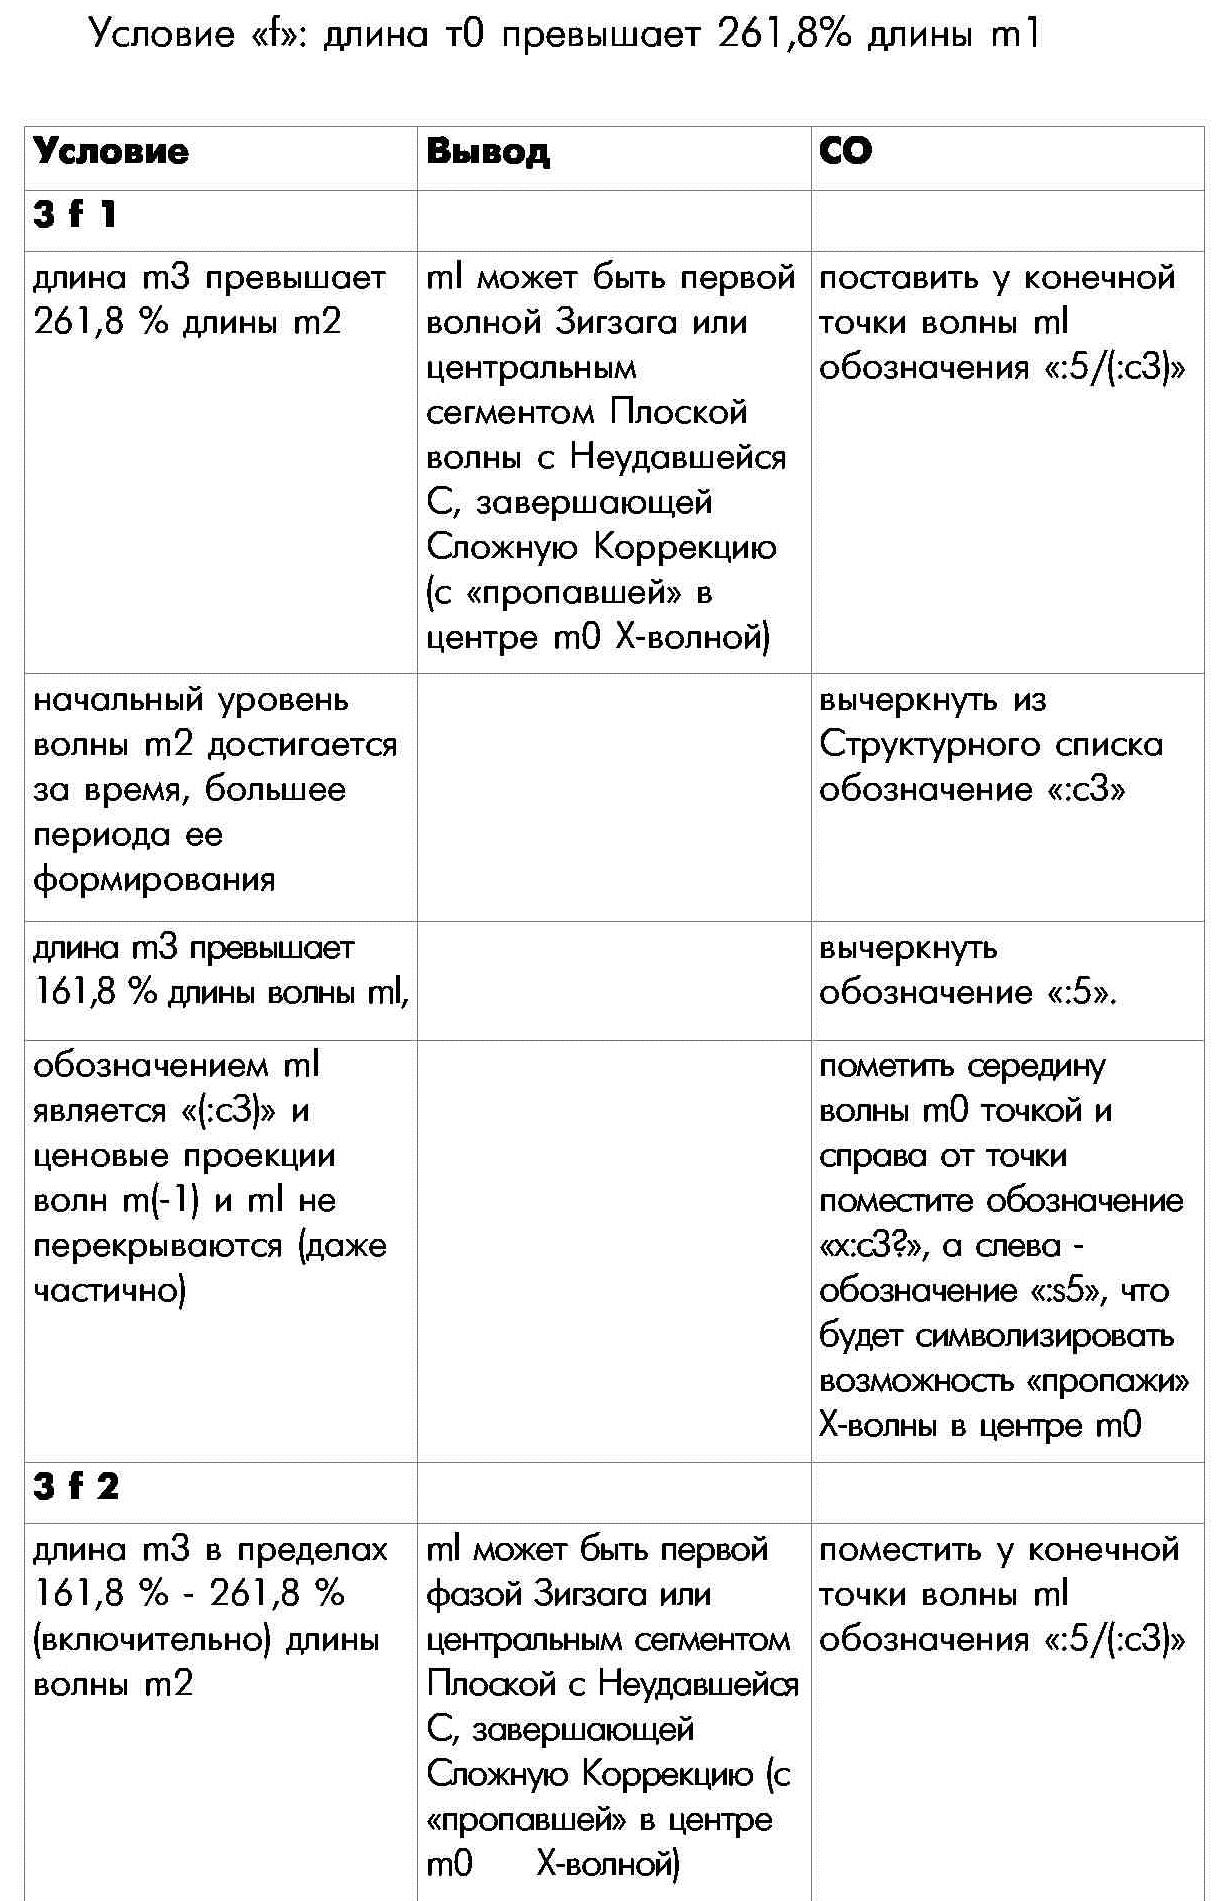 Правило П-3 определения внутренней структуры моноволны семнадцатая часть таблицы условие